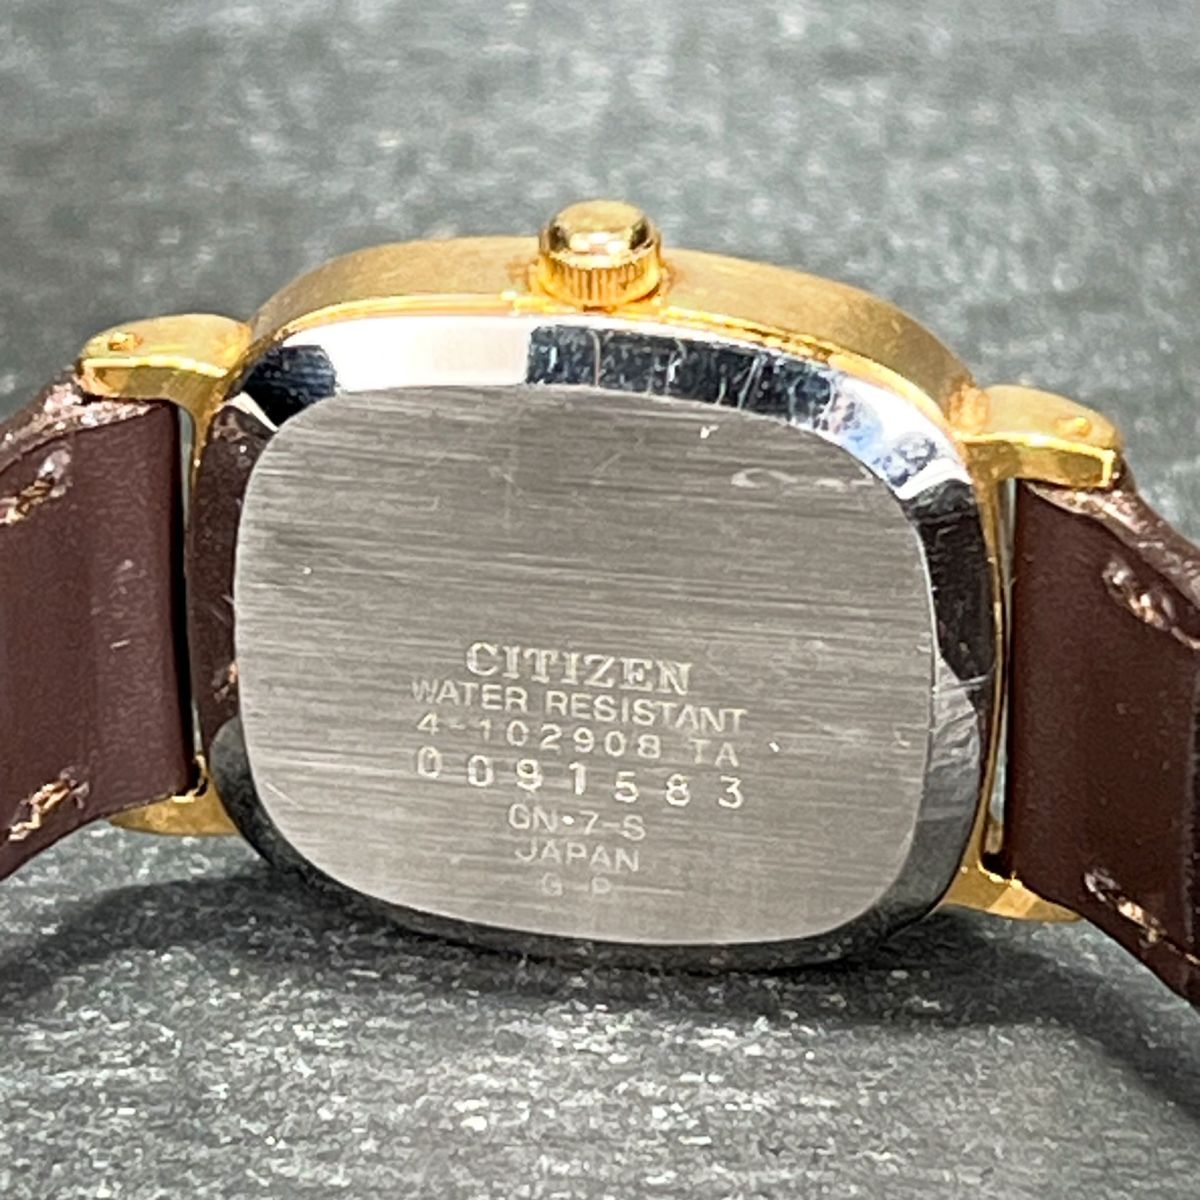 CITIZEN シチズン QUARTS クオーツ 4-102908 腕時計 アナログ スクエア 3針 ブラウン文字盤 レザーベルト ゴールドケース ステンレス